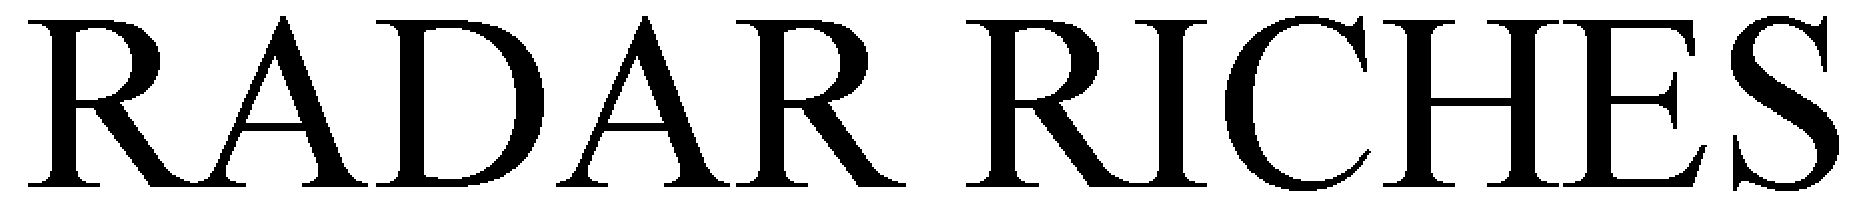 Trademark Logo RADAR RICHES